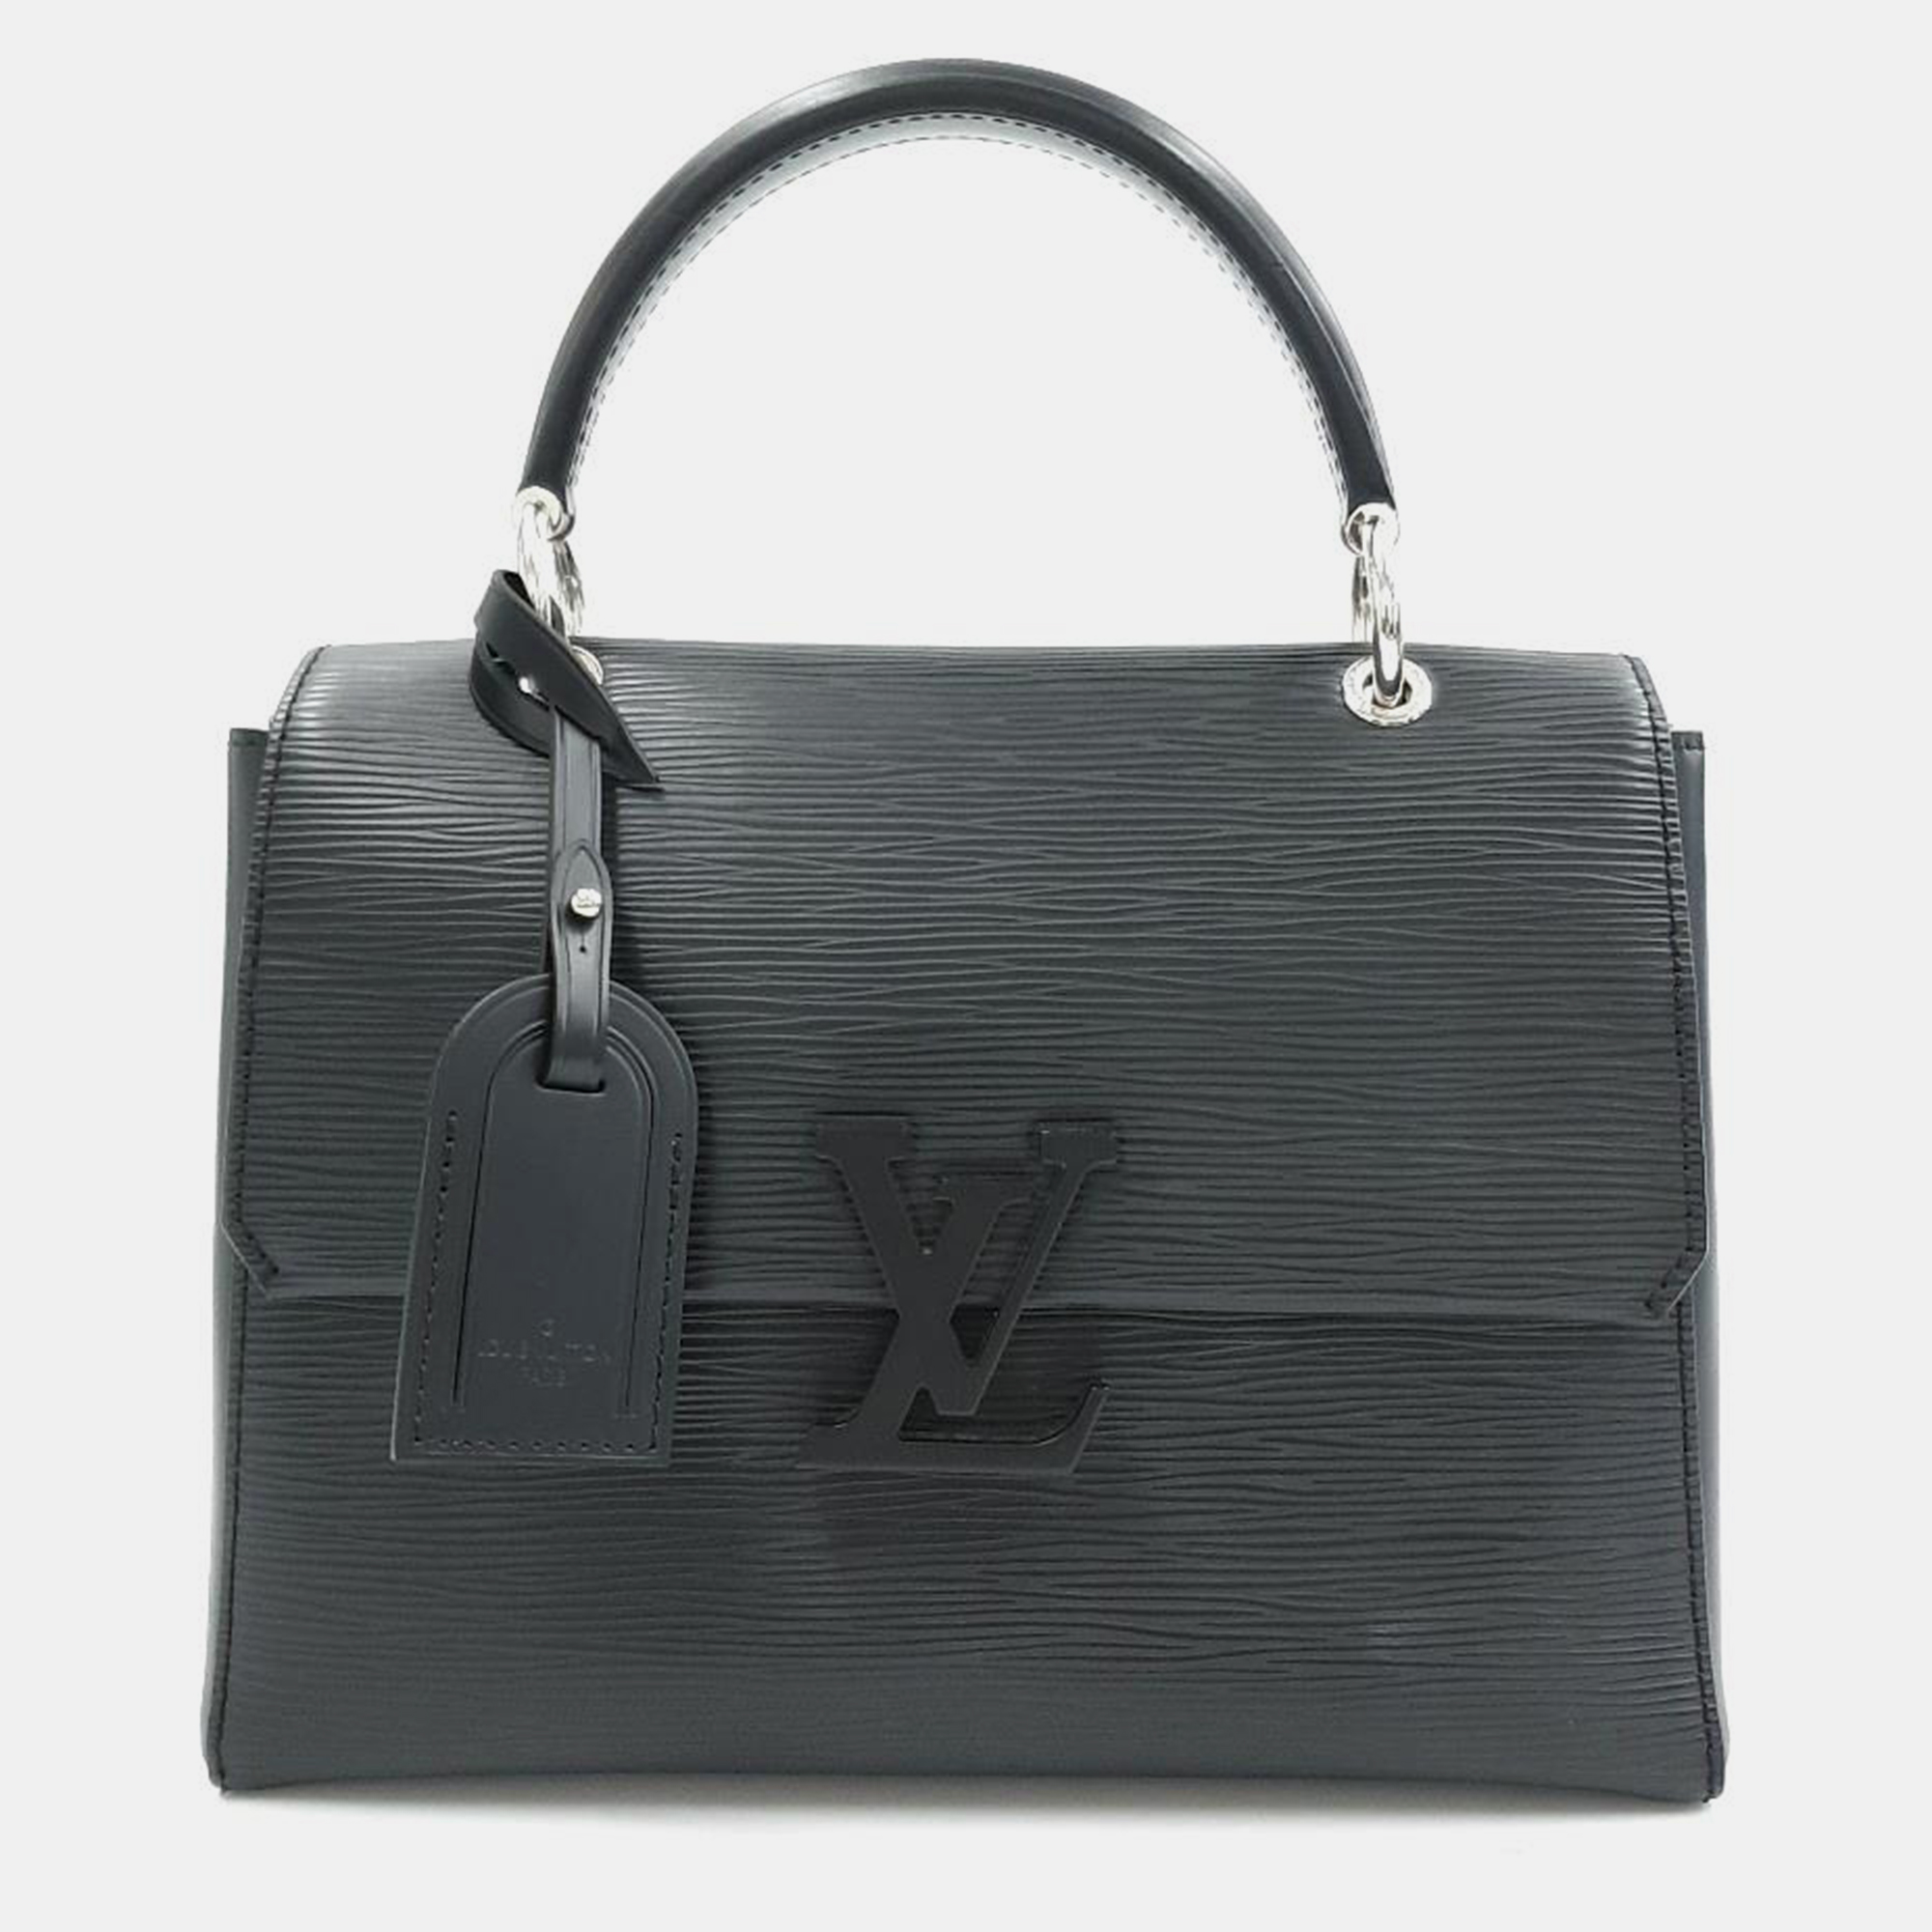 Louis vuitton black epi leather grenelle pm top handle bag